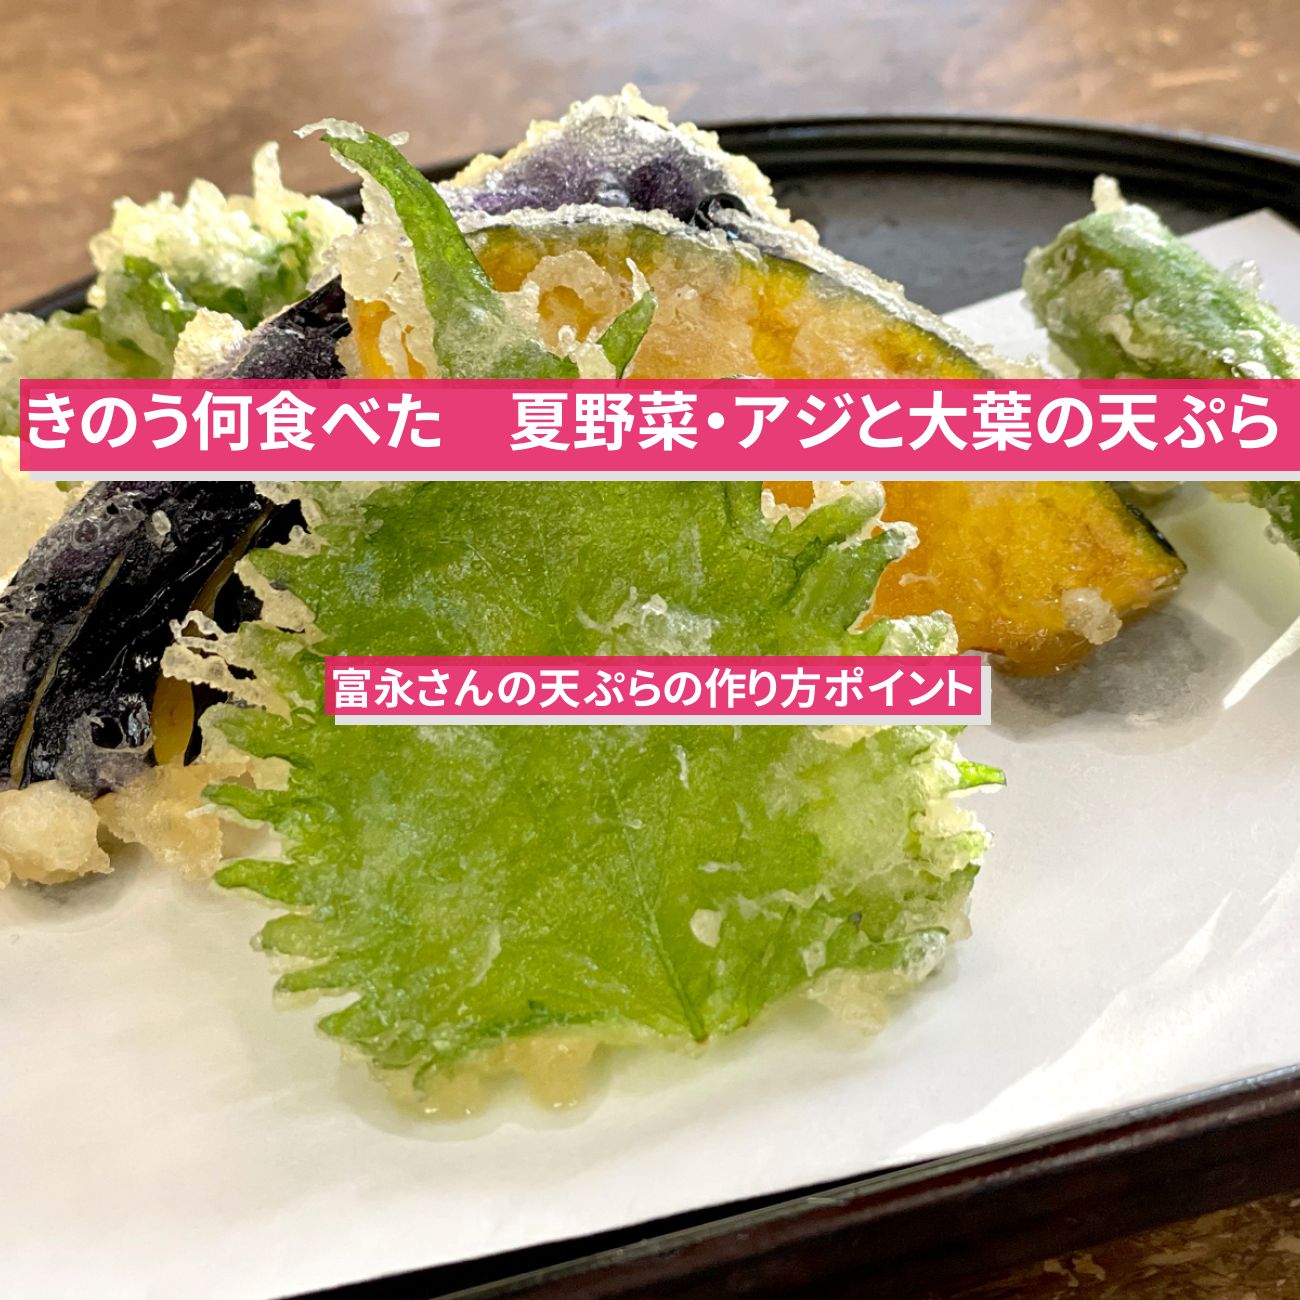 【きのう何食べた】『夏野菜・アジと大葉の天ぷら』富永さんの天ぷらのポイント・レシピ・作り方〔西島秀俊〕